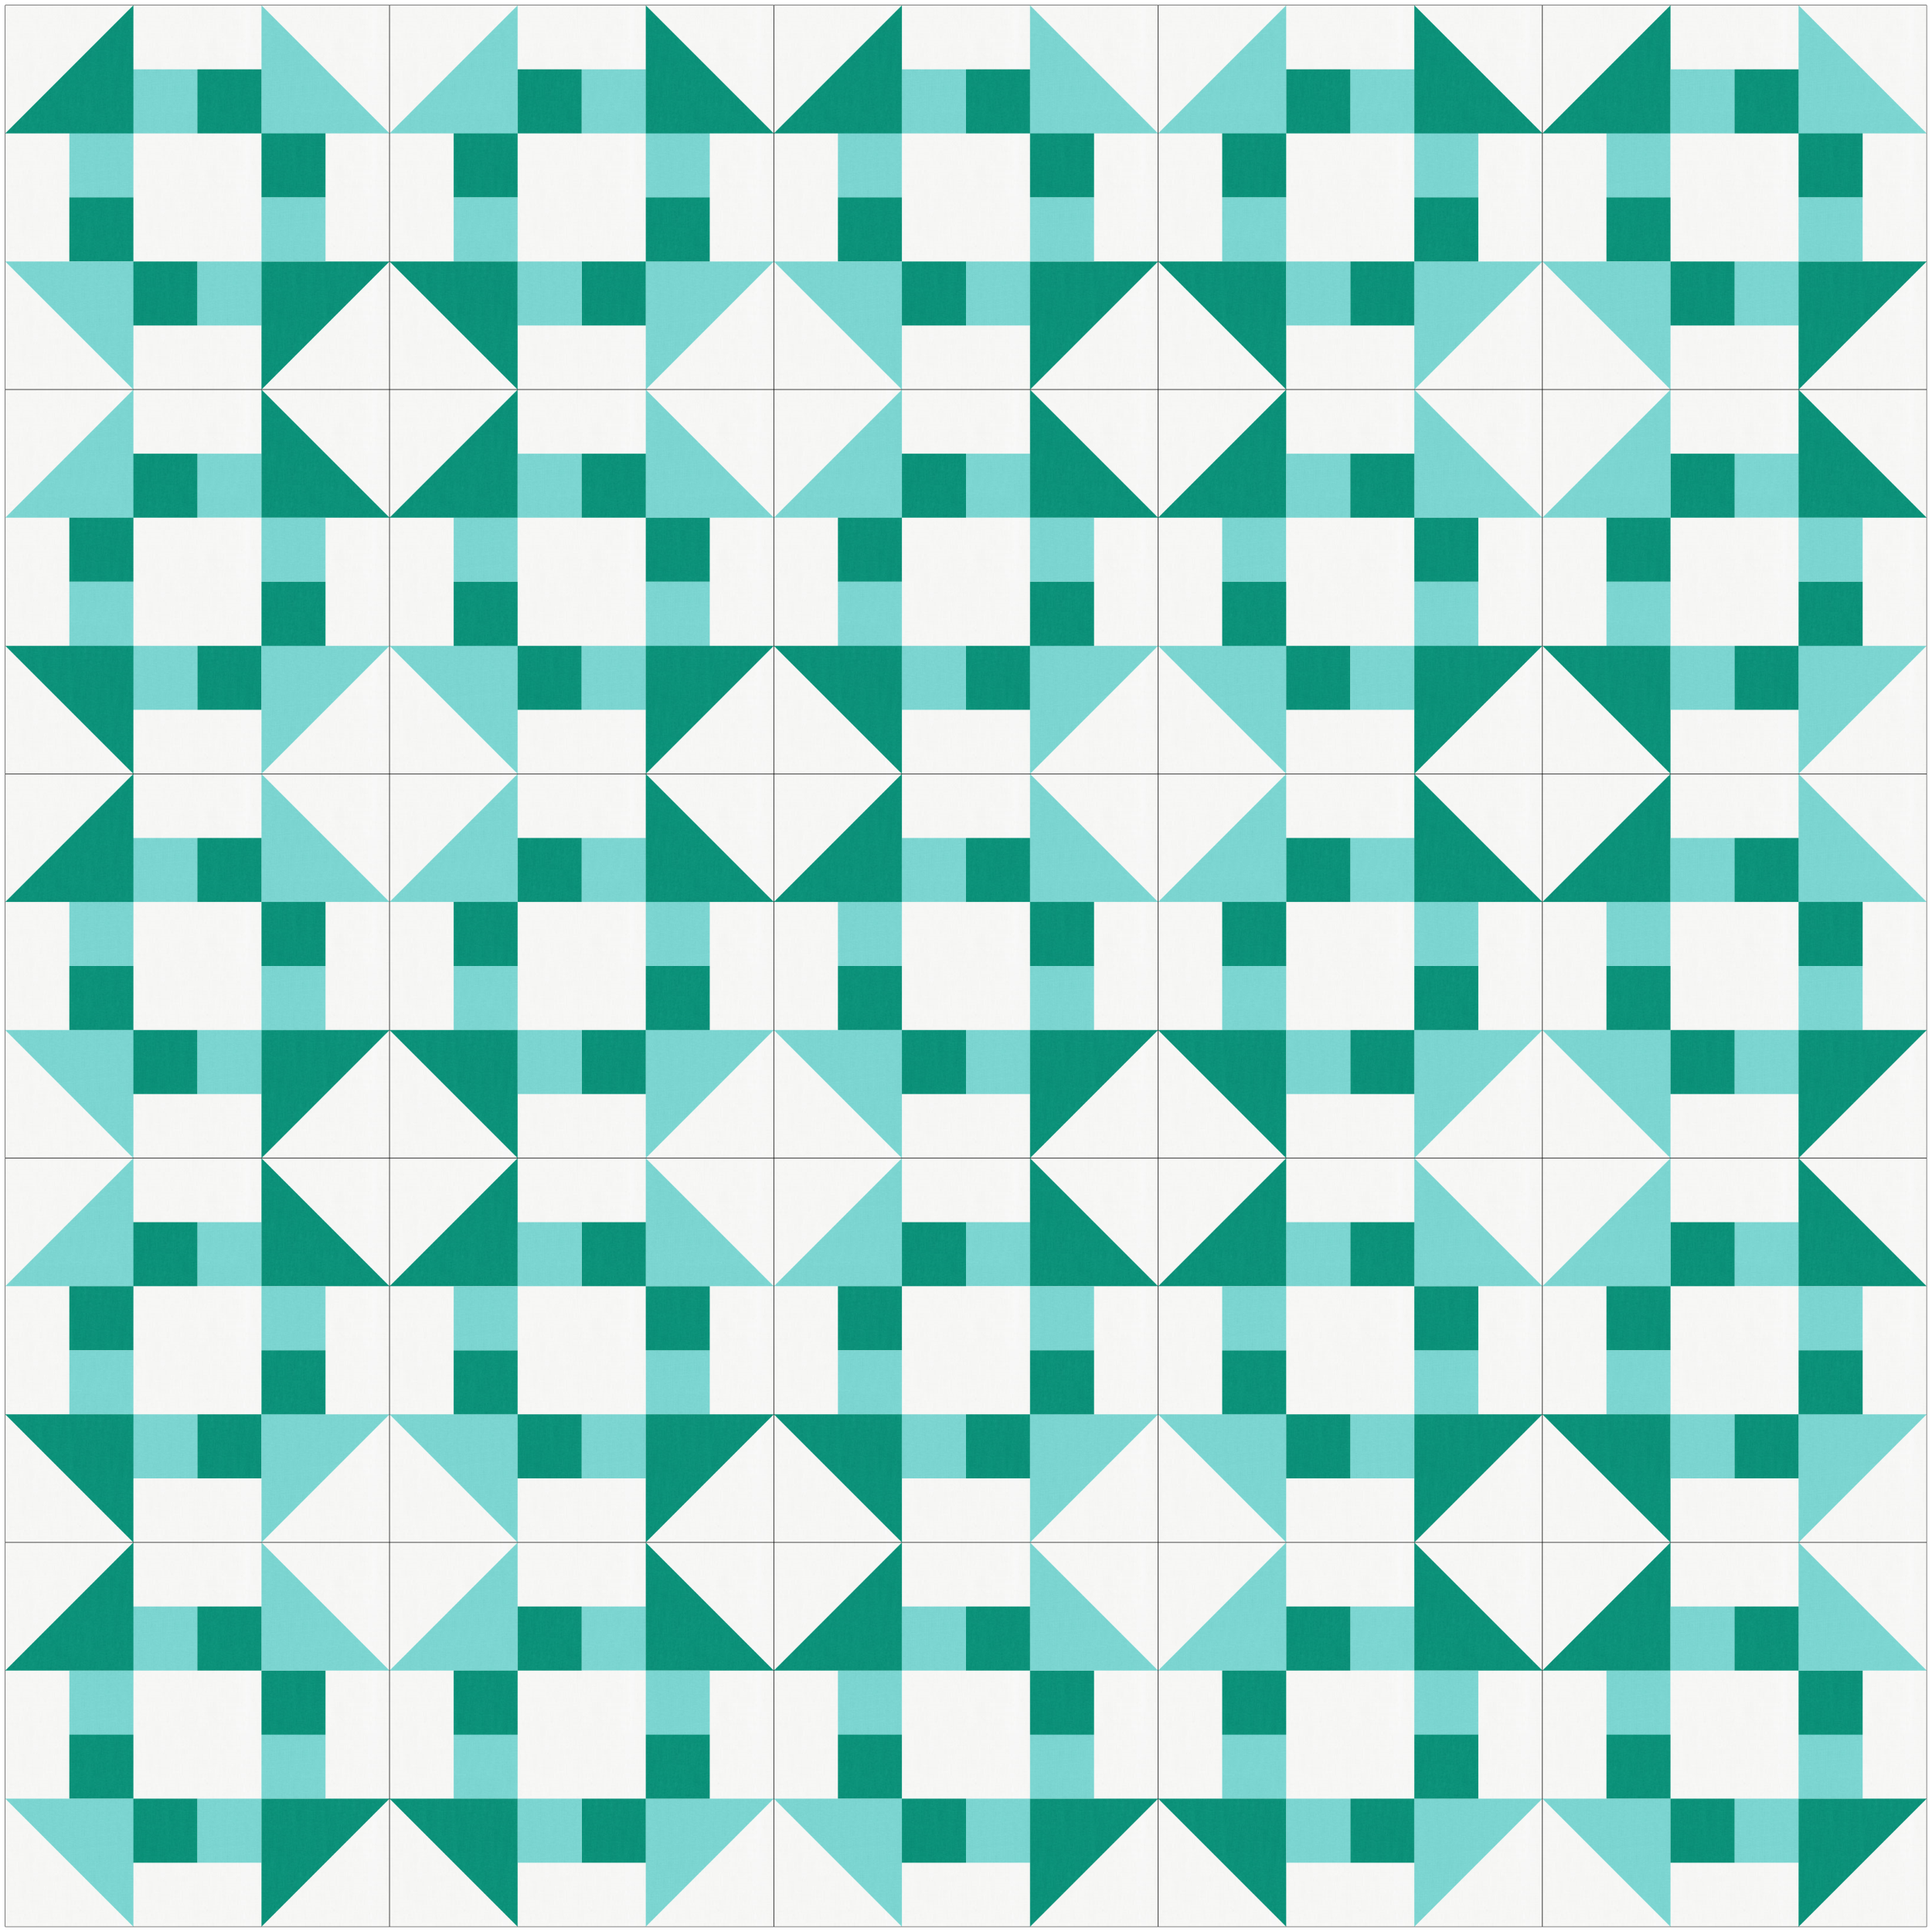 Scrappy Churn Dash quilt grid alternate layout